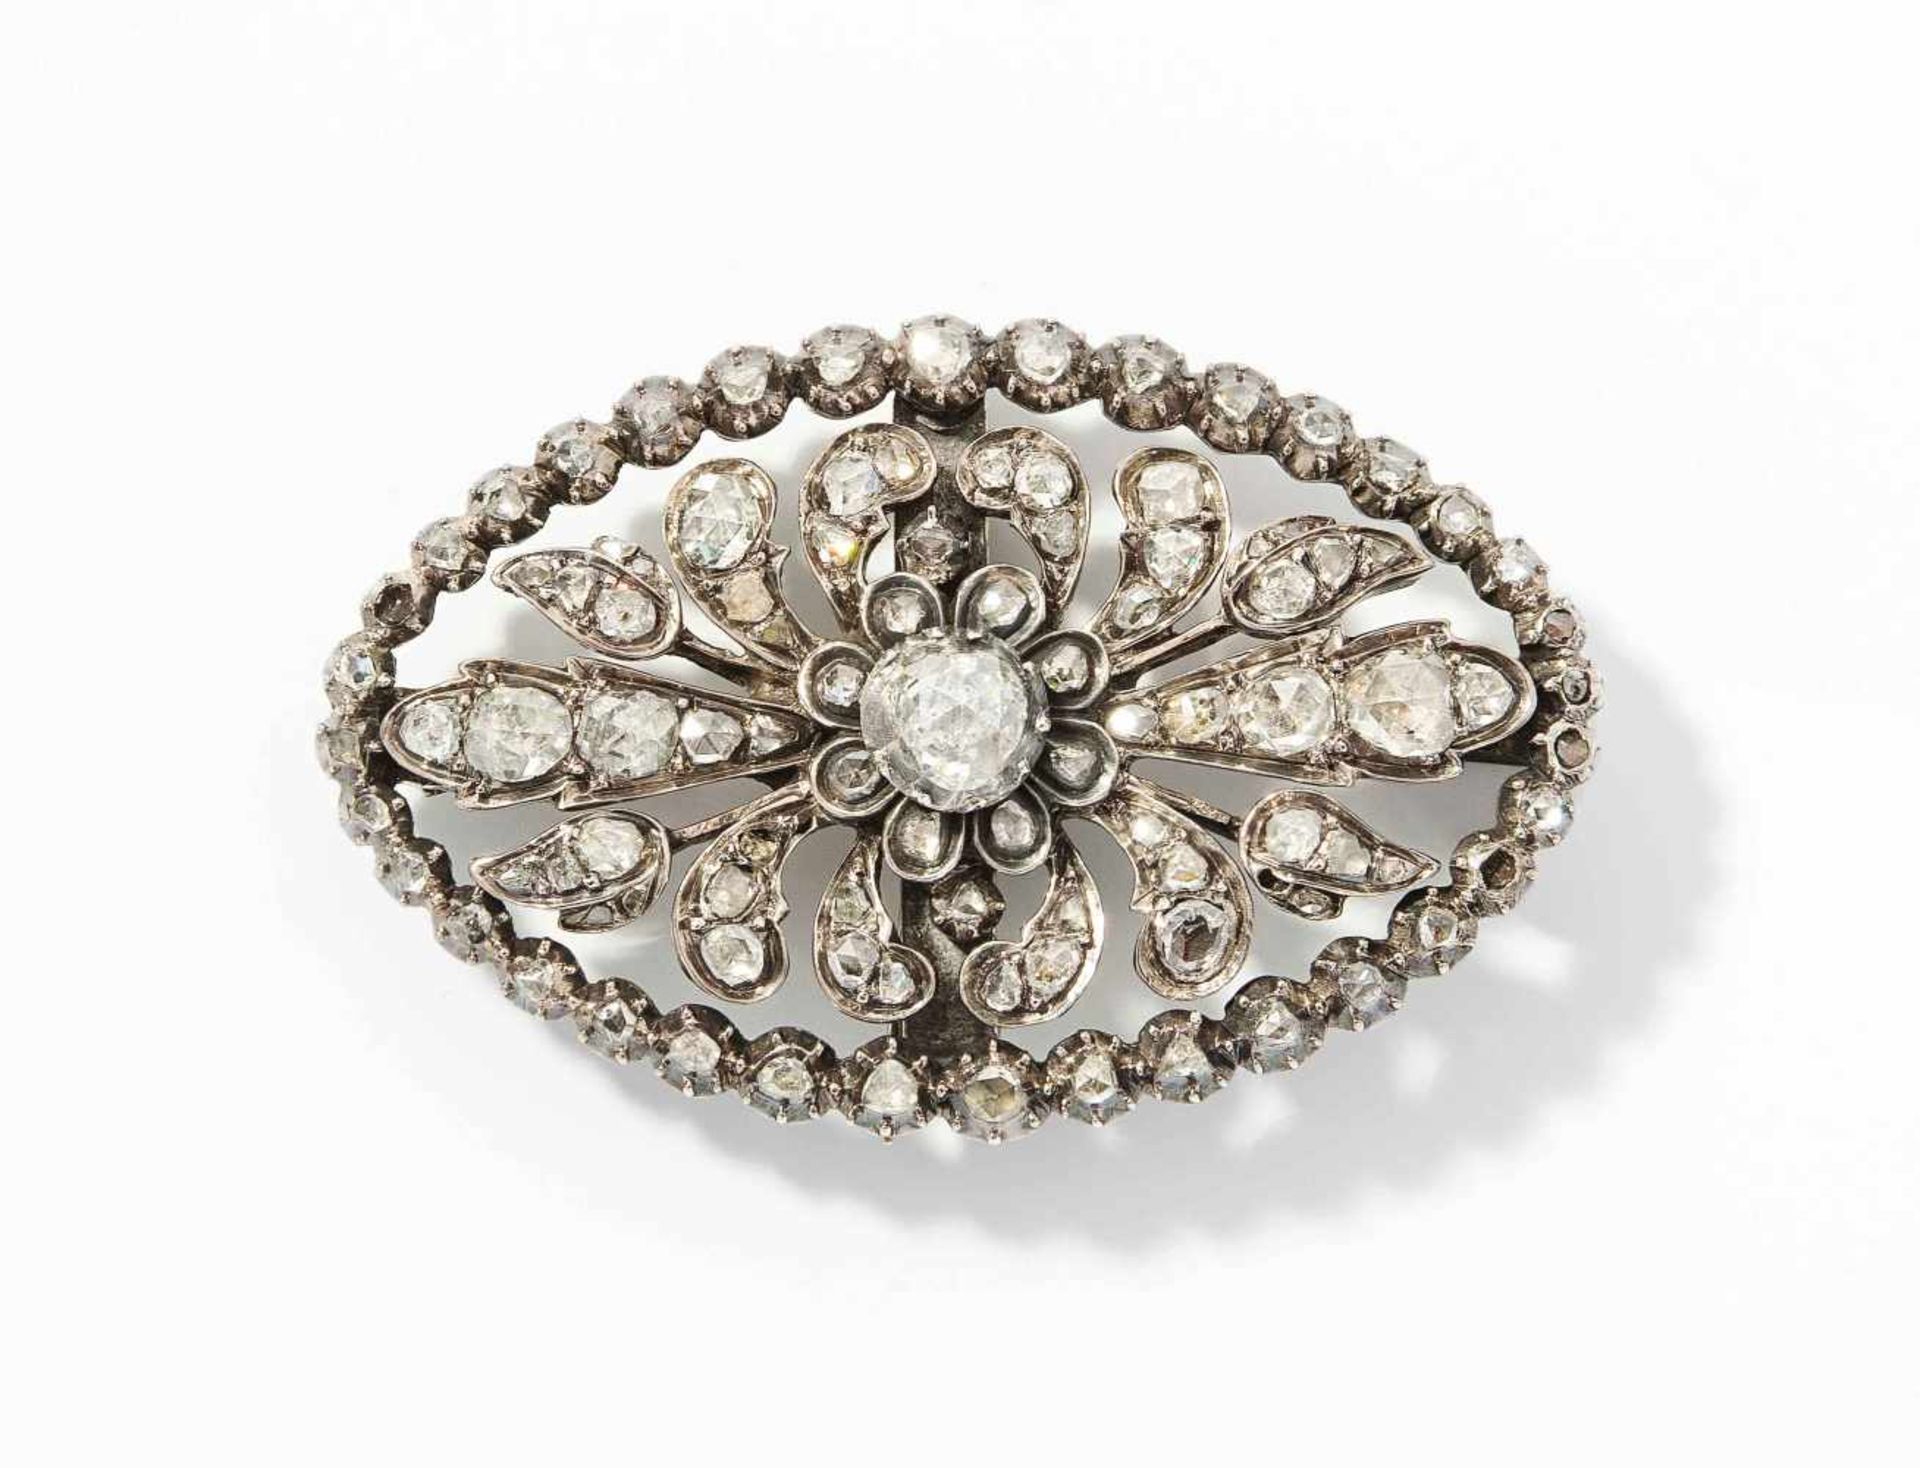 Diamant-Brosche19.Jh. Silber. Ovale Form mit floralem Motiv. Ausgefasst mit 1 Diamantrose ca. 5 mm Ø